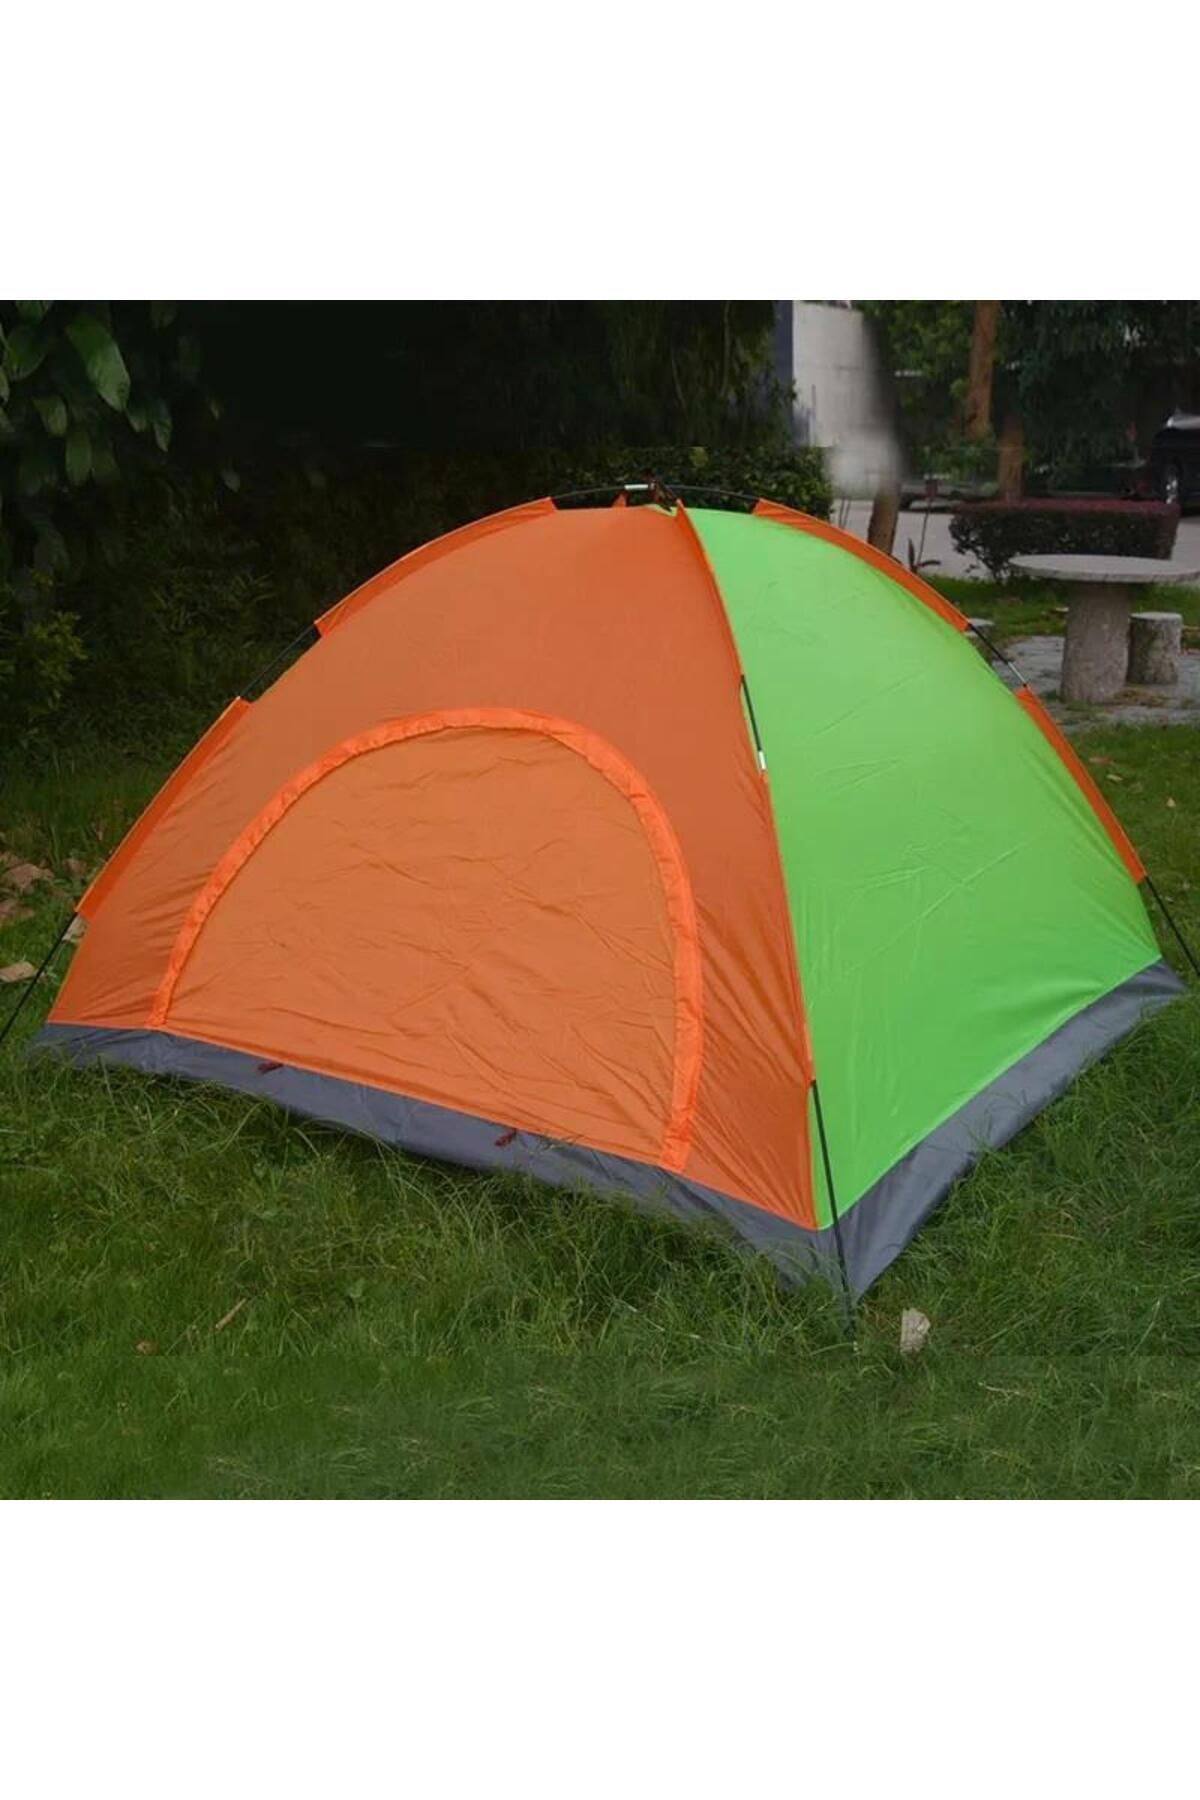 Hsport rüzgar geçirmez portatif mevsimlik kolay kurulum 4 kişilik kamp ve plaj çadırı